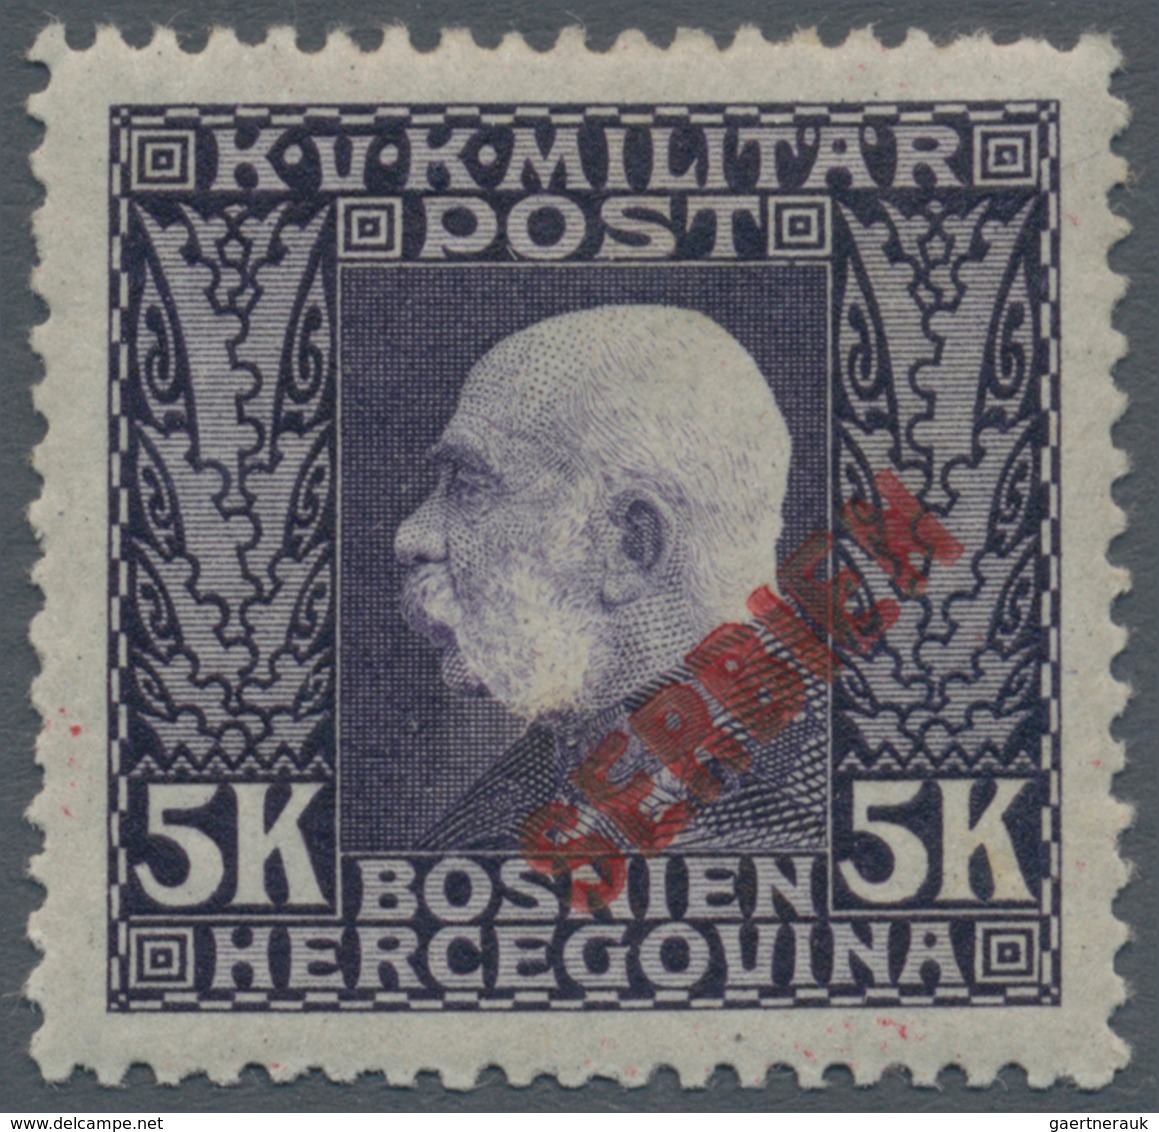 Österreichisch-Ungarische Feldpost - Serbien: 1916, Kaiser Franz Joseph 1 H bis 4 10 K kompletter Pr